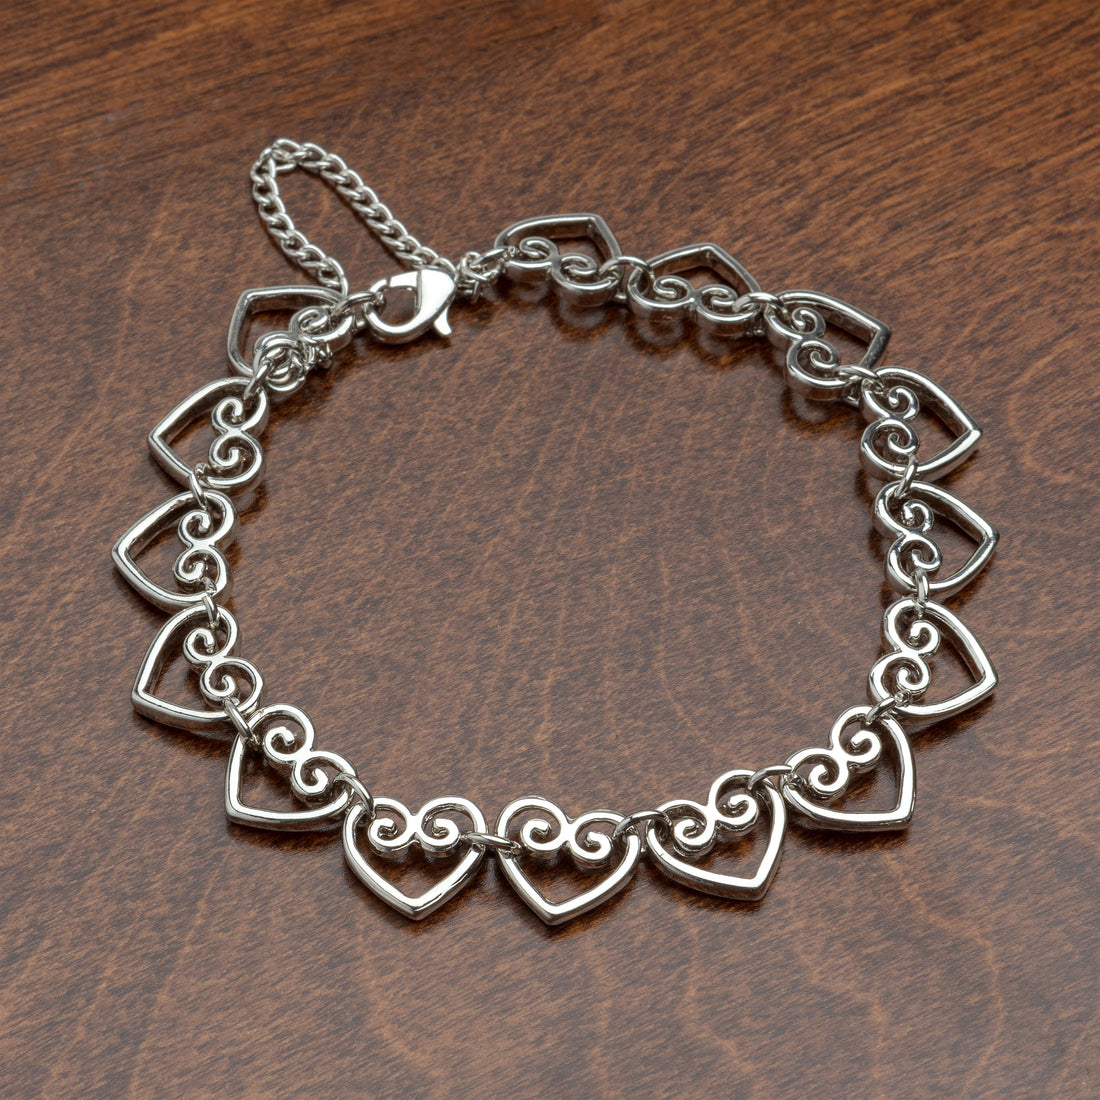 Chanasya Healing Heart Elegant Gift Bracelet